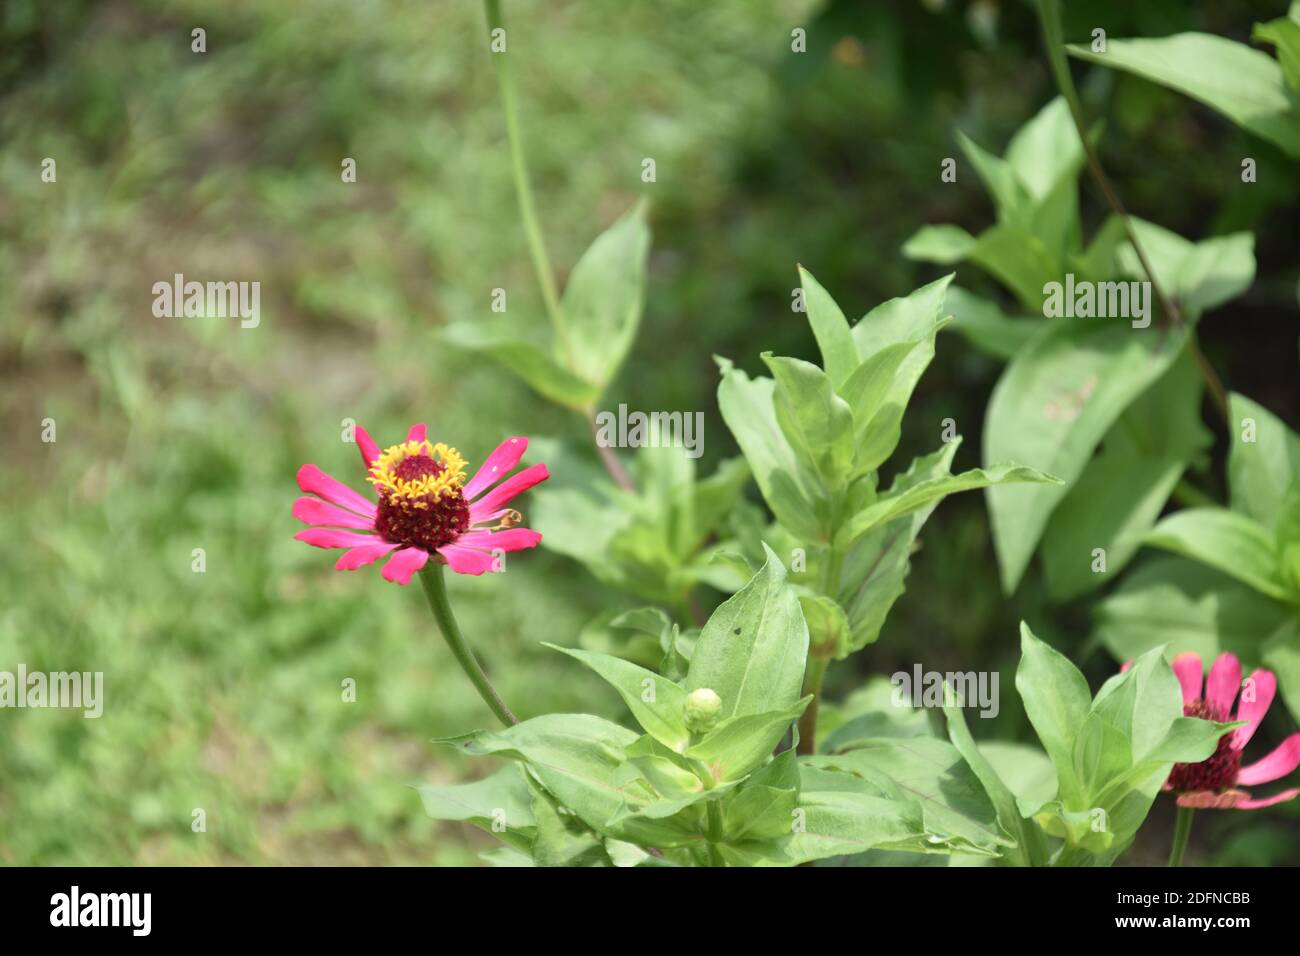 Rosa Zinnia Blume oder Zinnia pauciflora in einem Garten Stockfoto